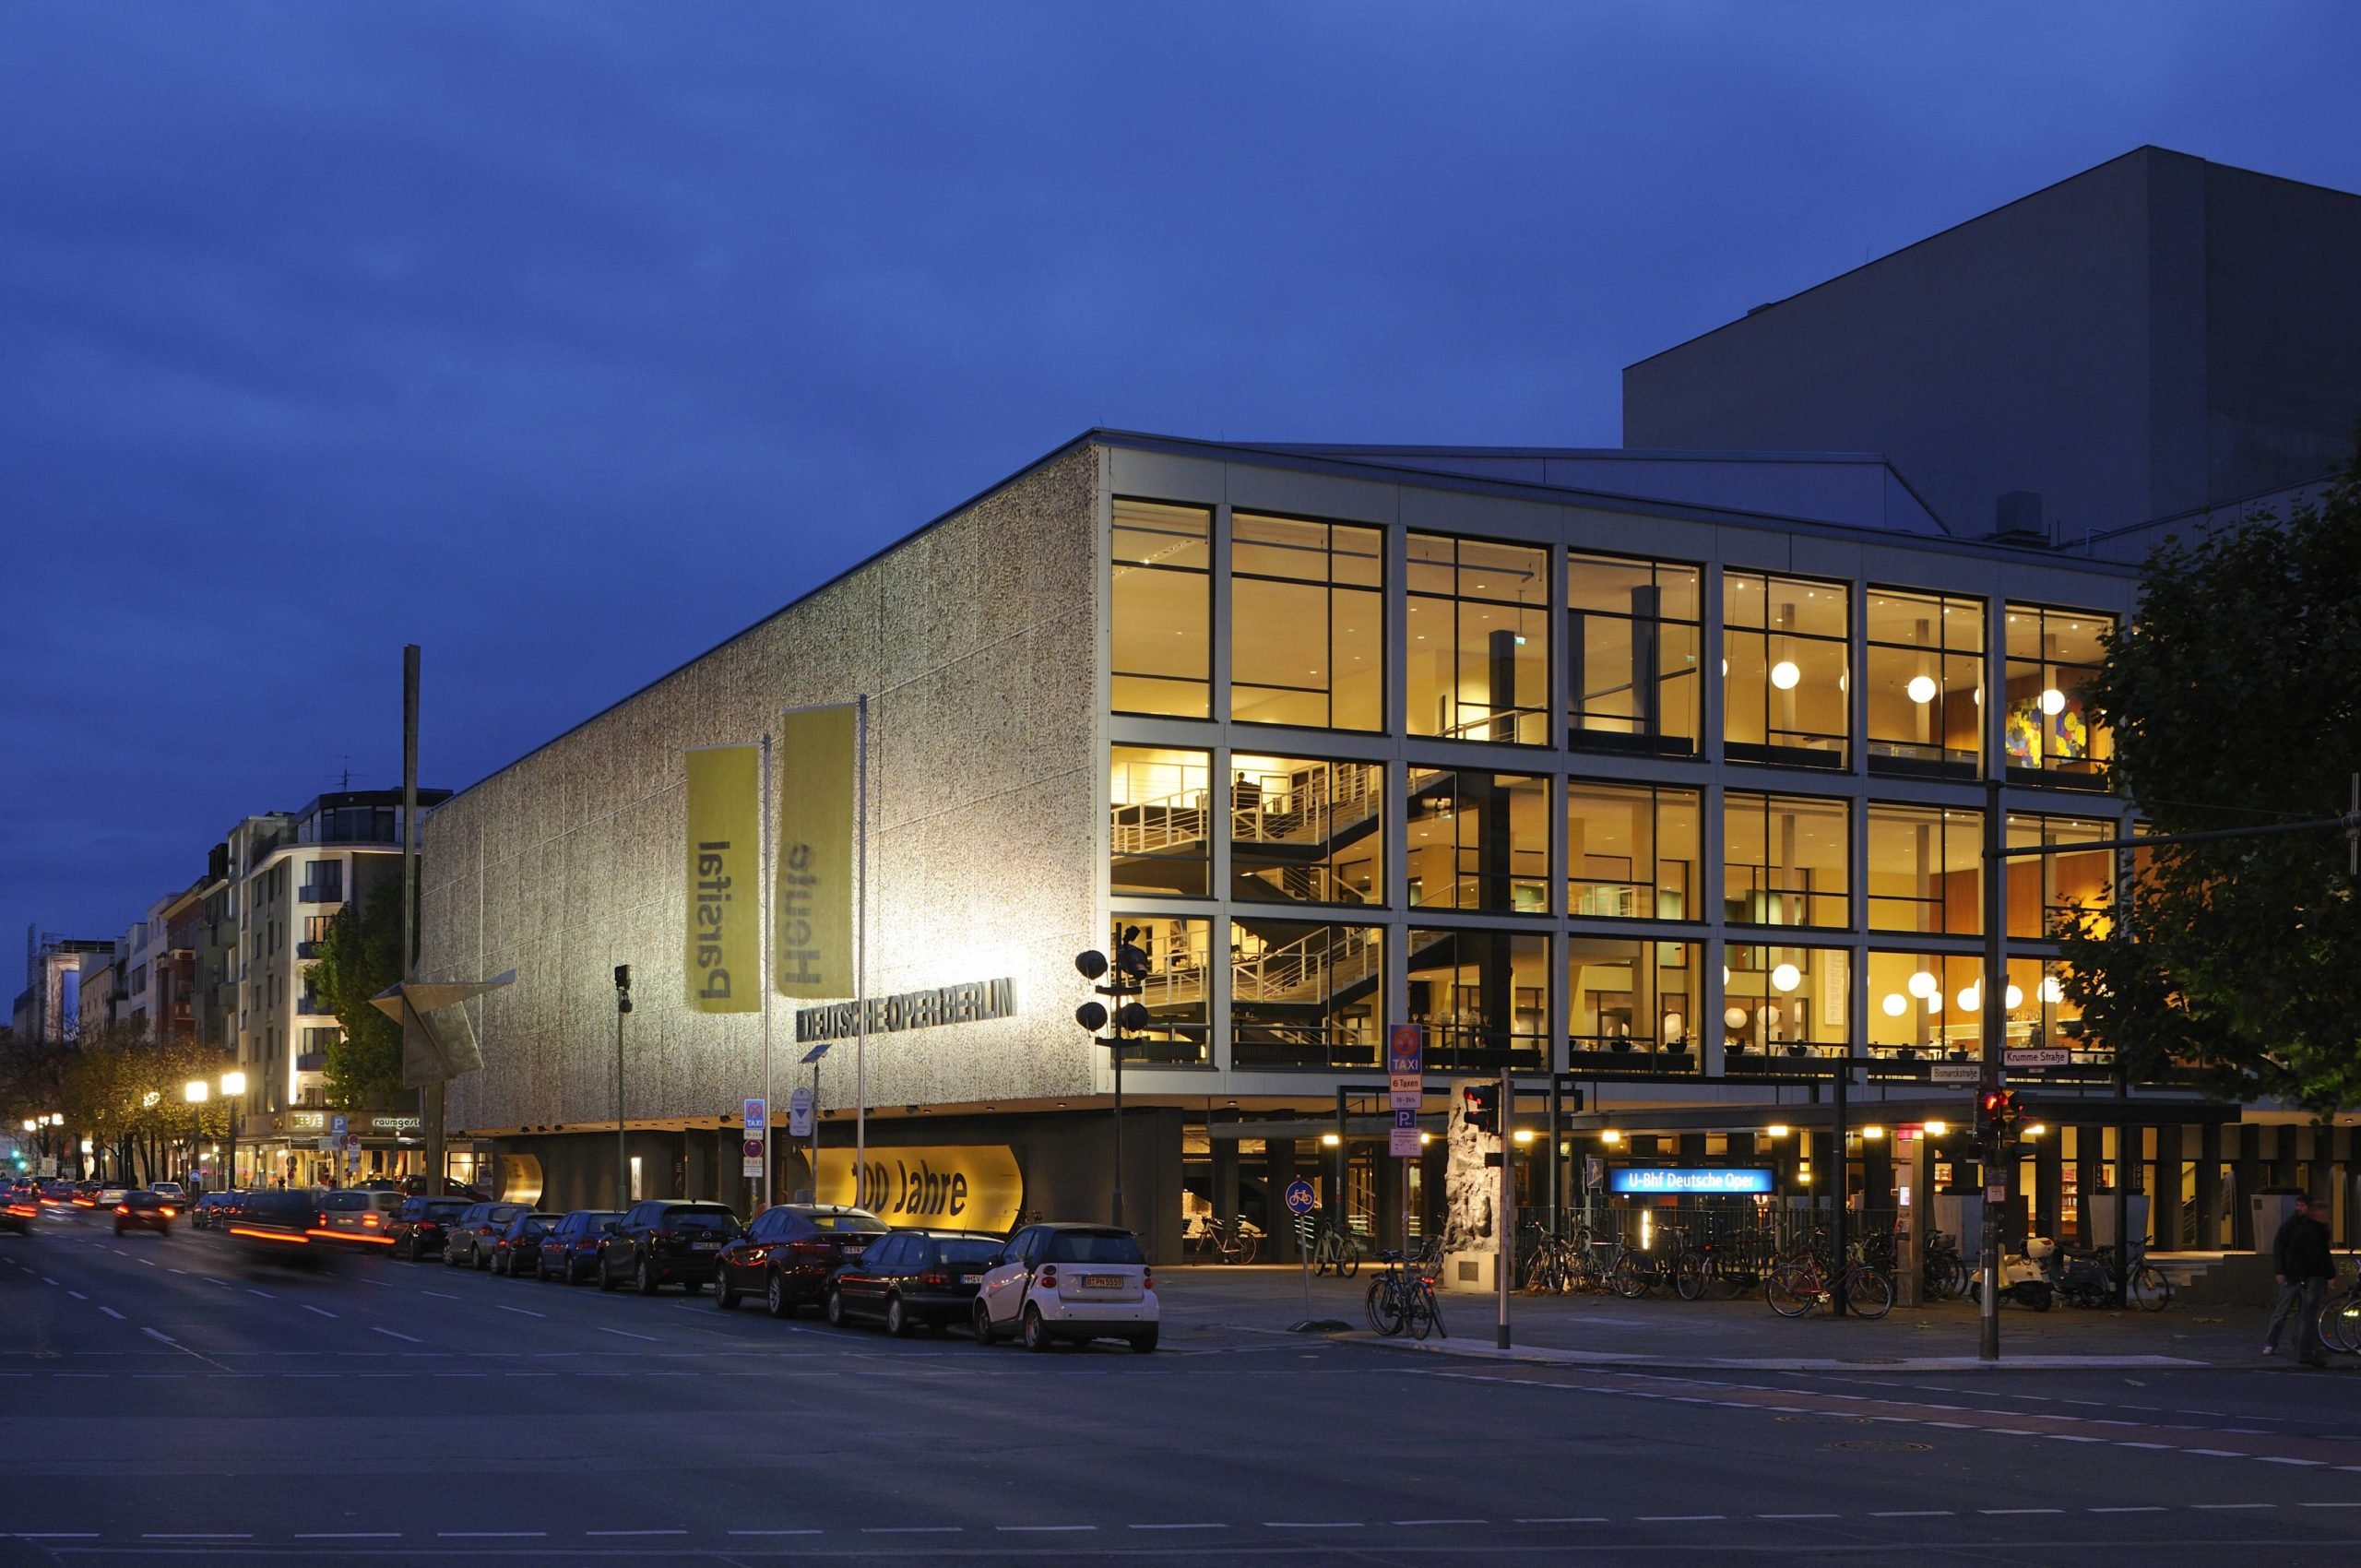 Hell erleuchtet! Die Deutsche Oper feierte 2012 ihren 100. Geburtstag. Foto: Imago/Imagebroker